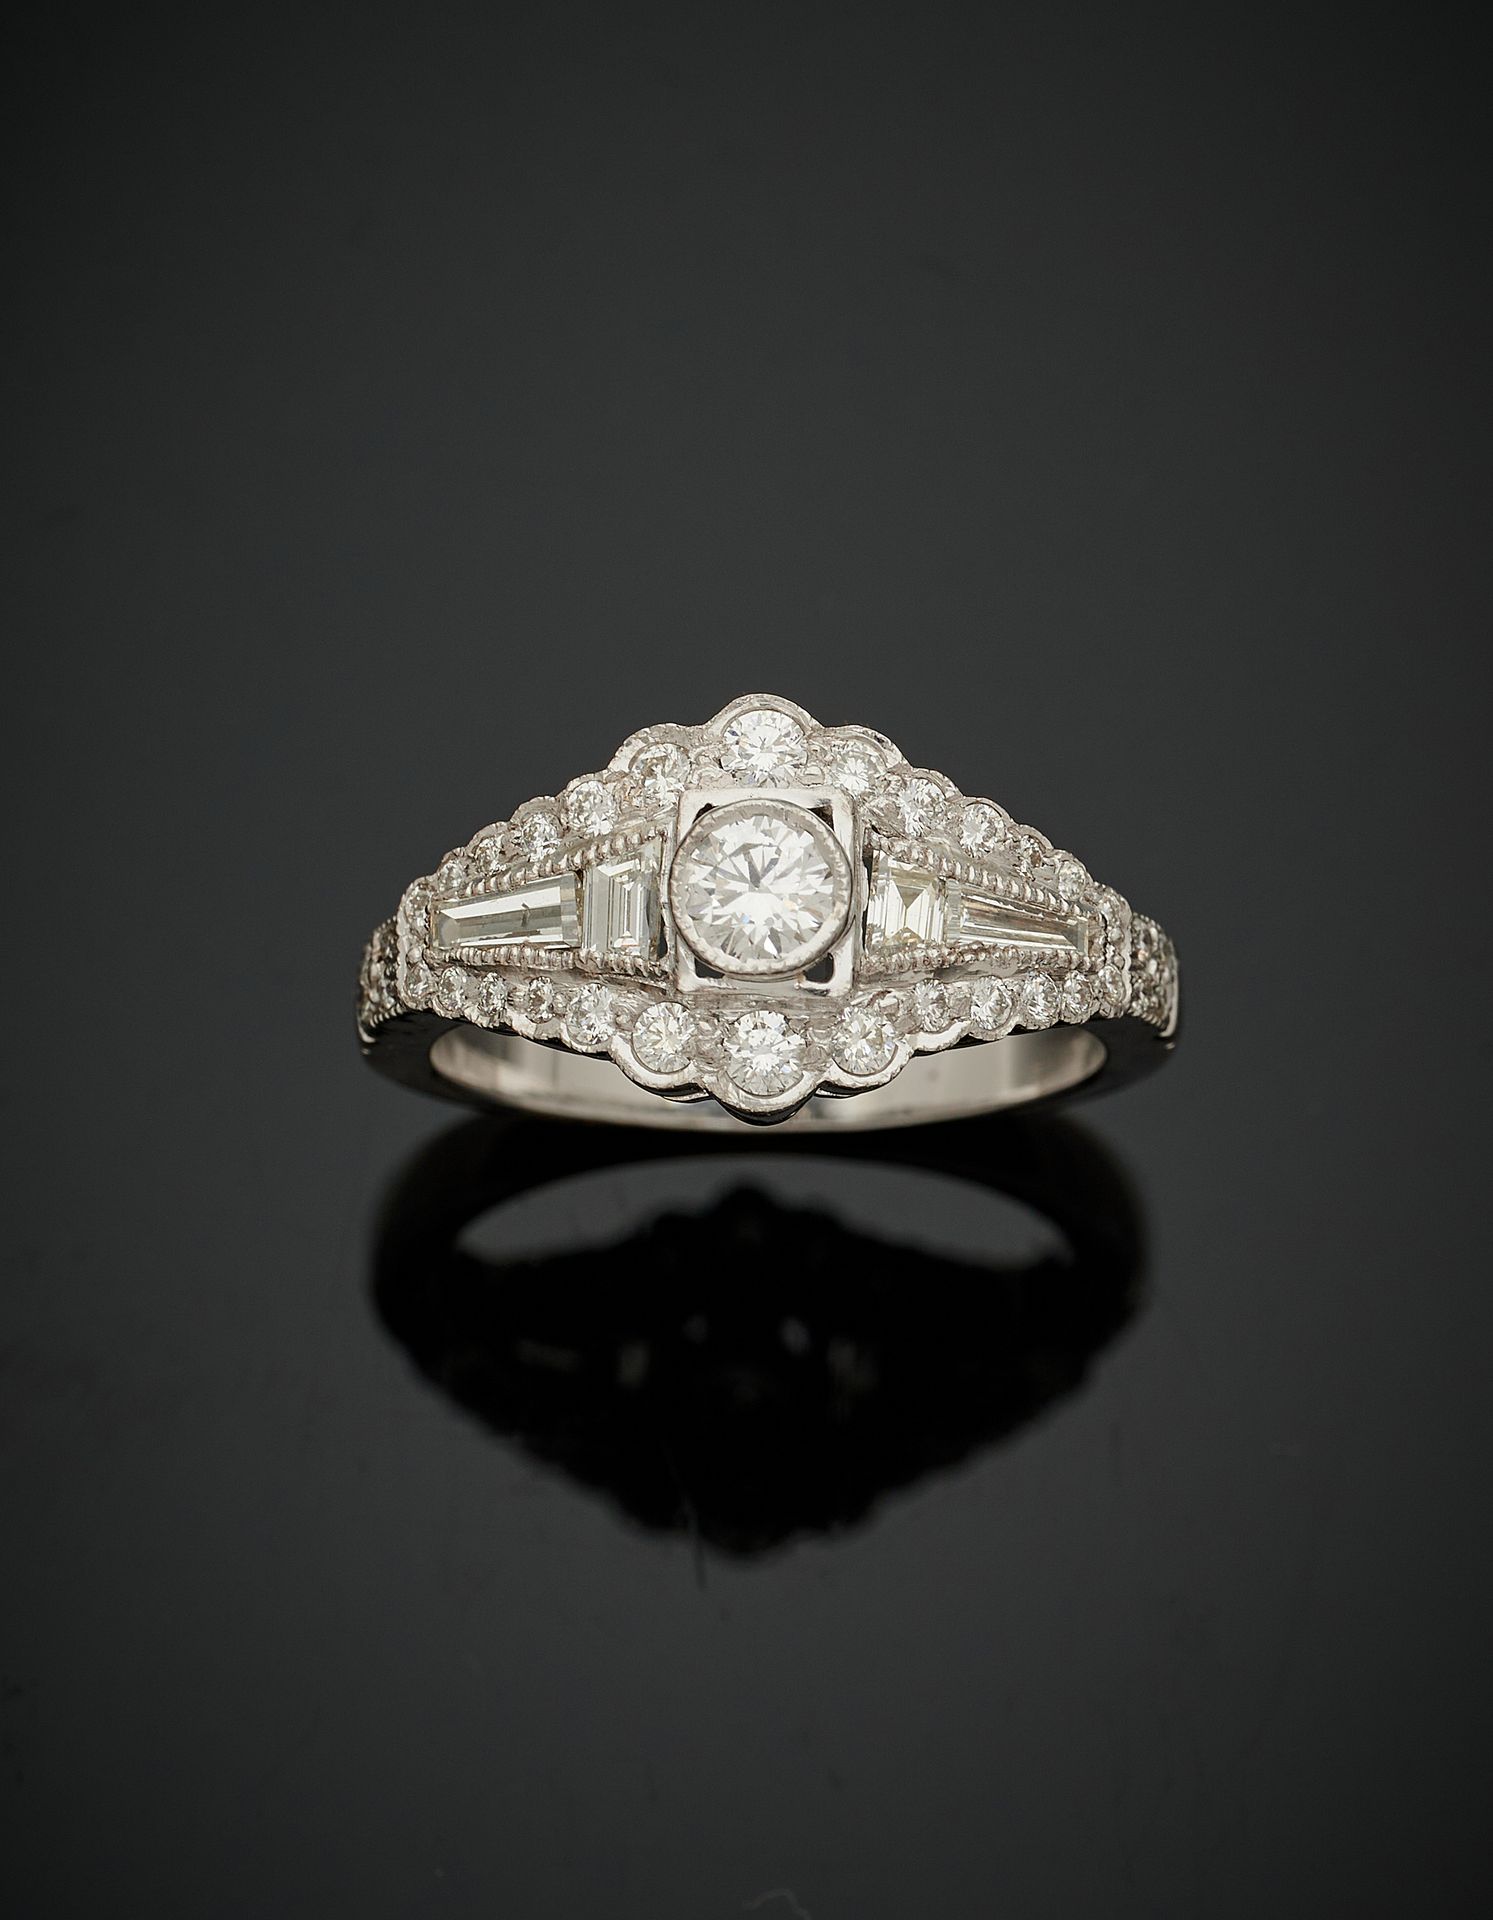 Null 白金戒指(750‰)，镶有落差较大的明亮式切割钻石，包括中央的一颗较大的钻石，还有尾巴。
手指 : 54-55 - 毛重 : 5,3 g